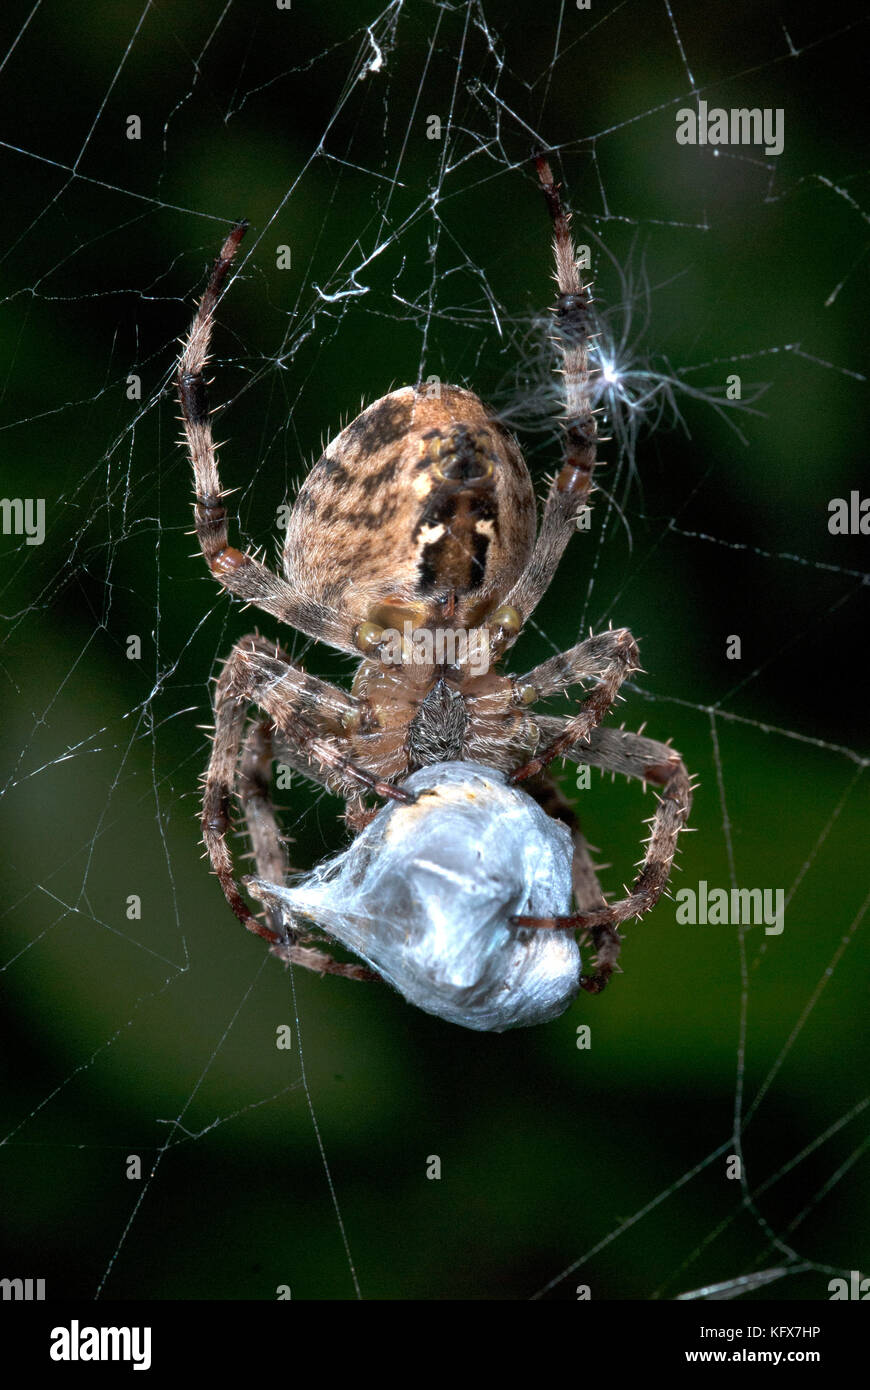 Giardino spider, araneus diadematus, sul web cocooning preda vittima, con fili di seta, catturati, predation, predator Foto Stock